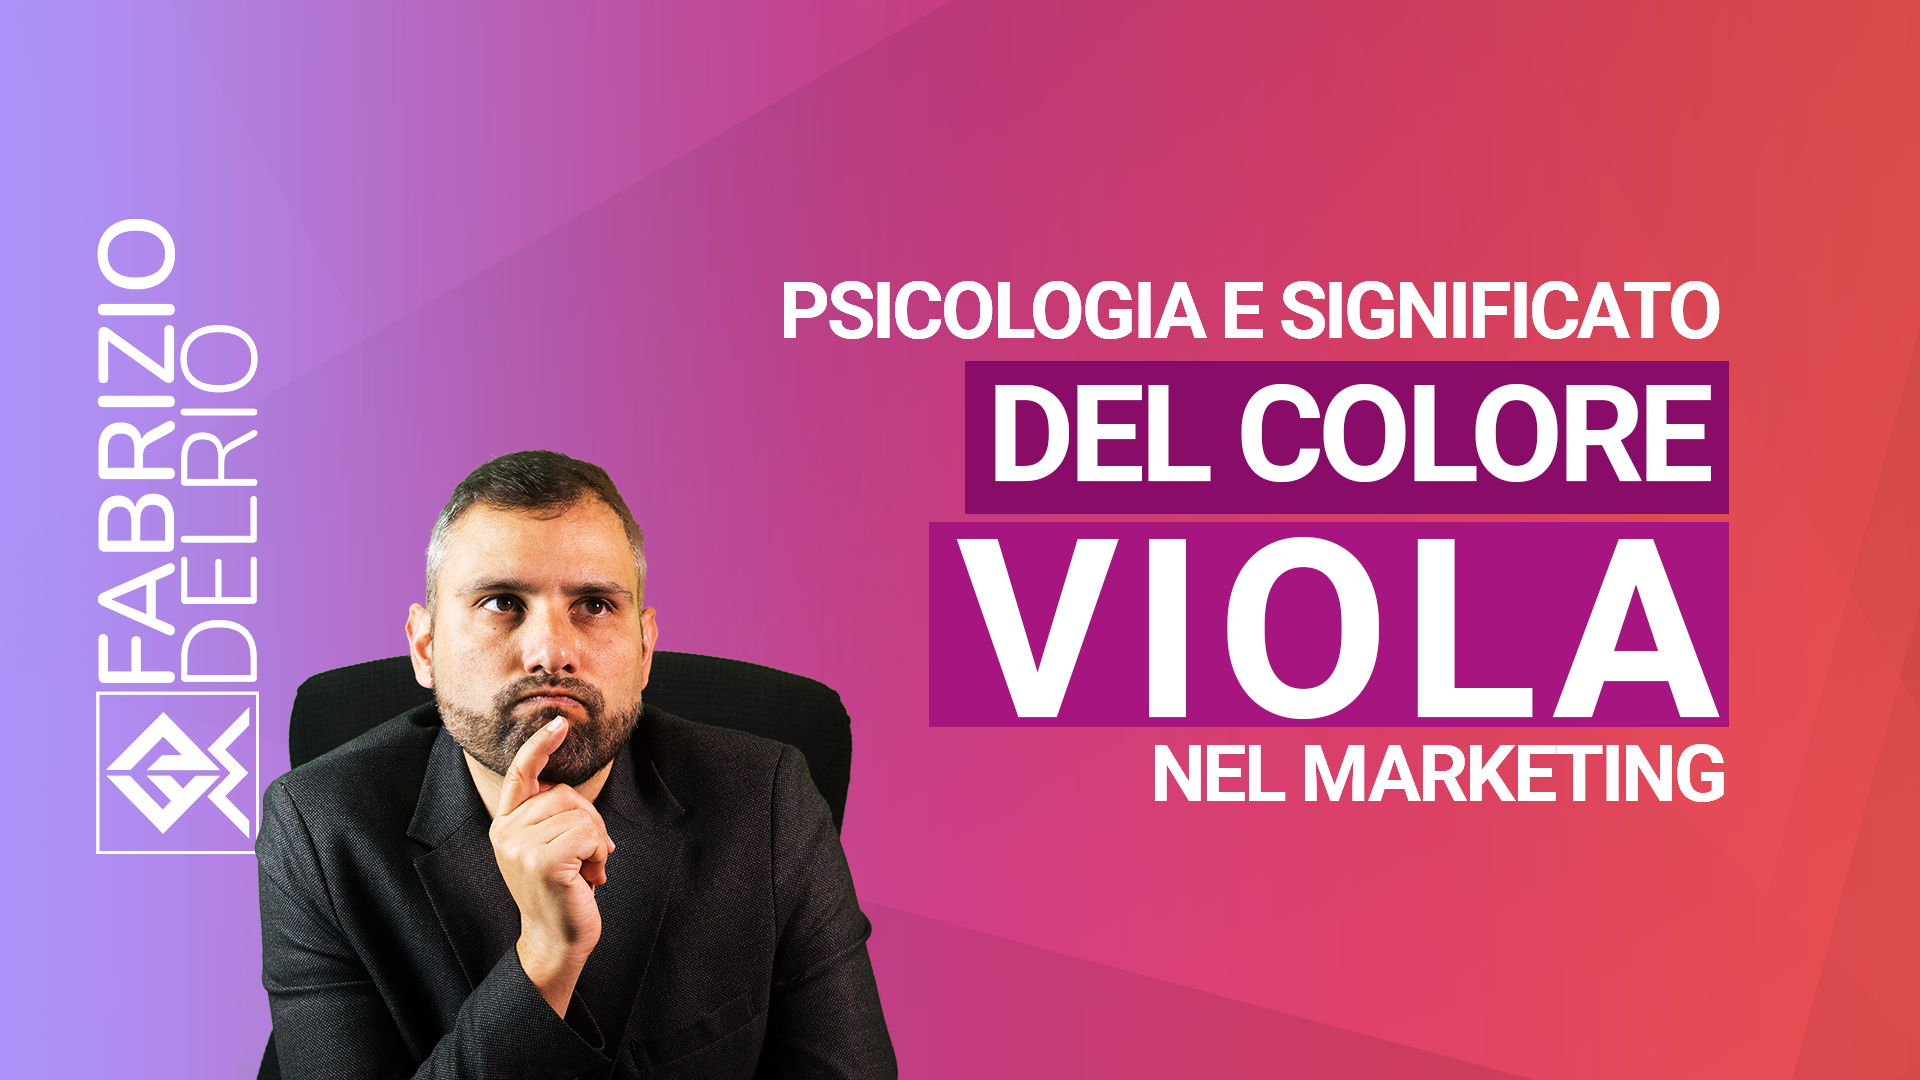 psicologia-significato-colore-viola-marketing-youtube.png